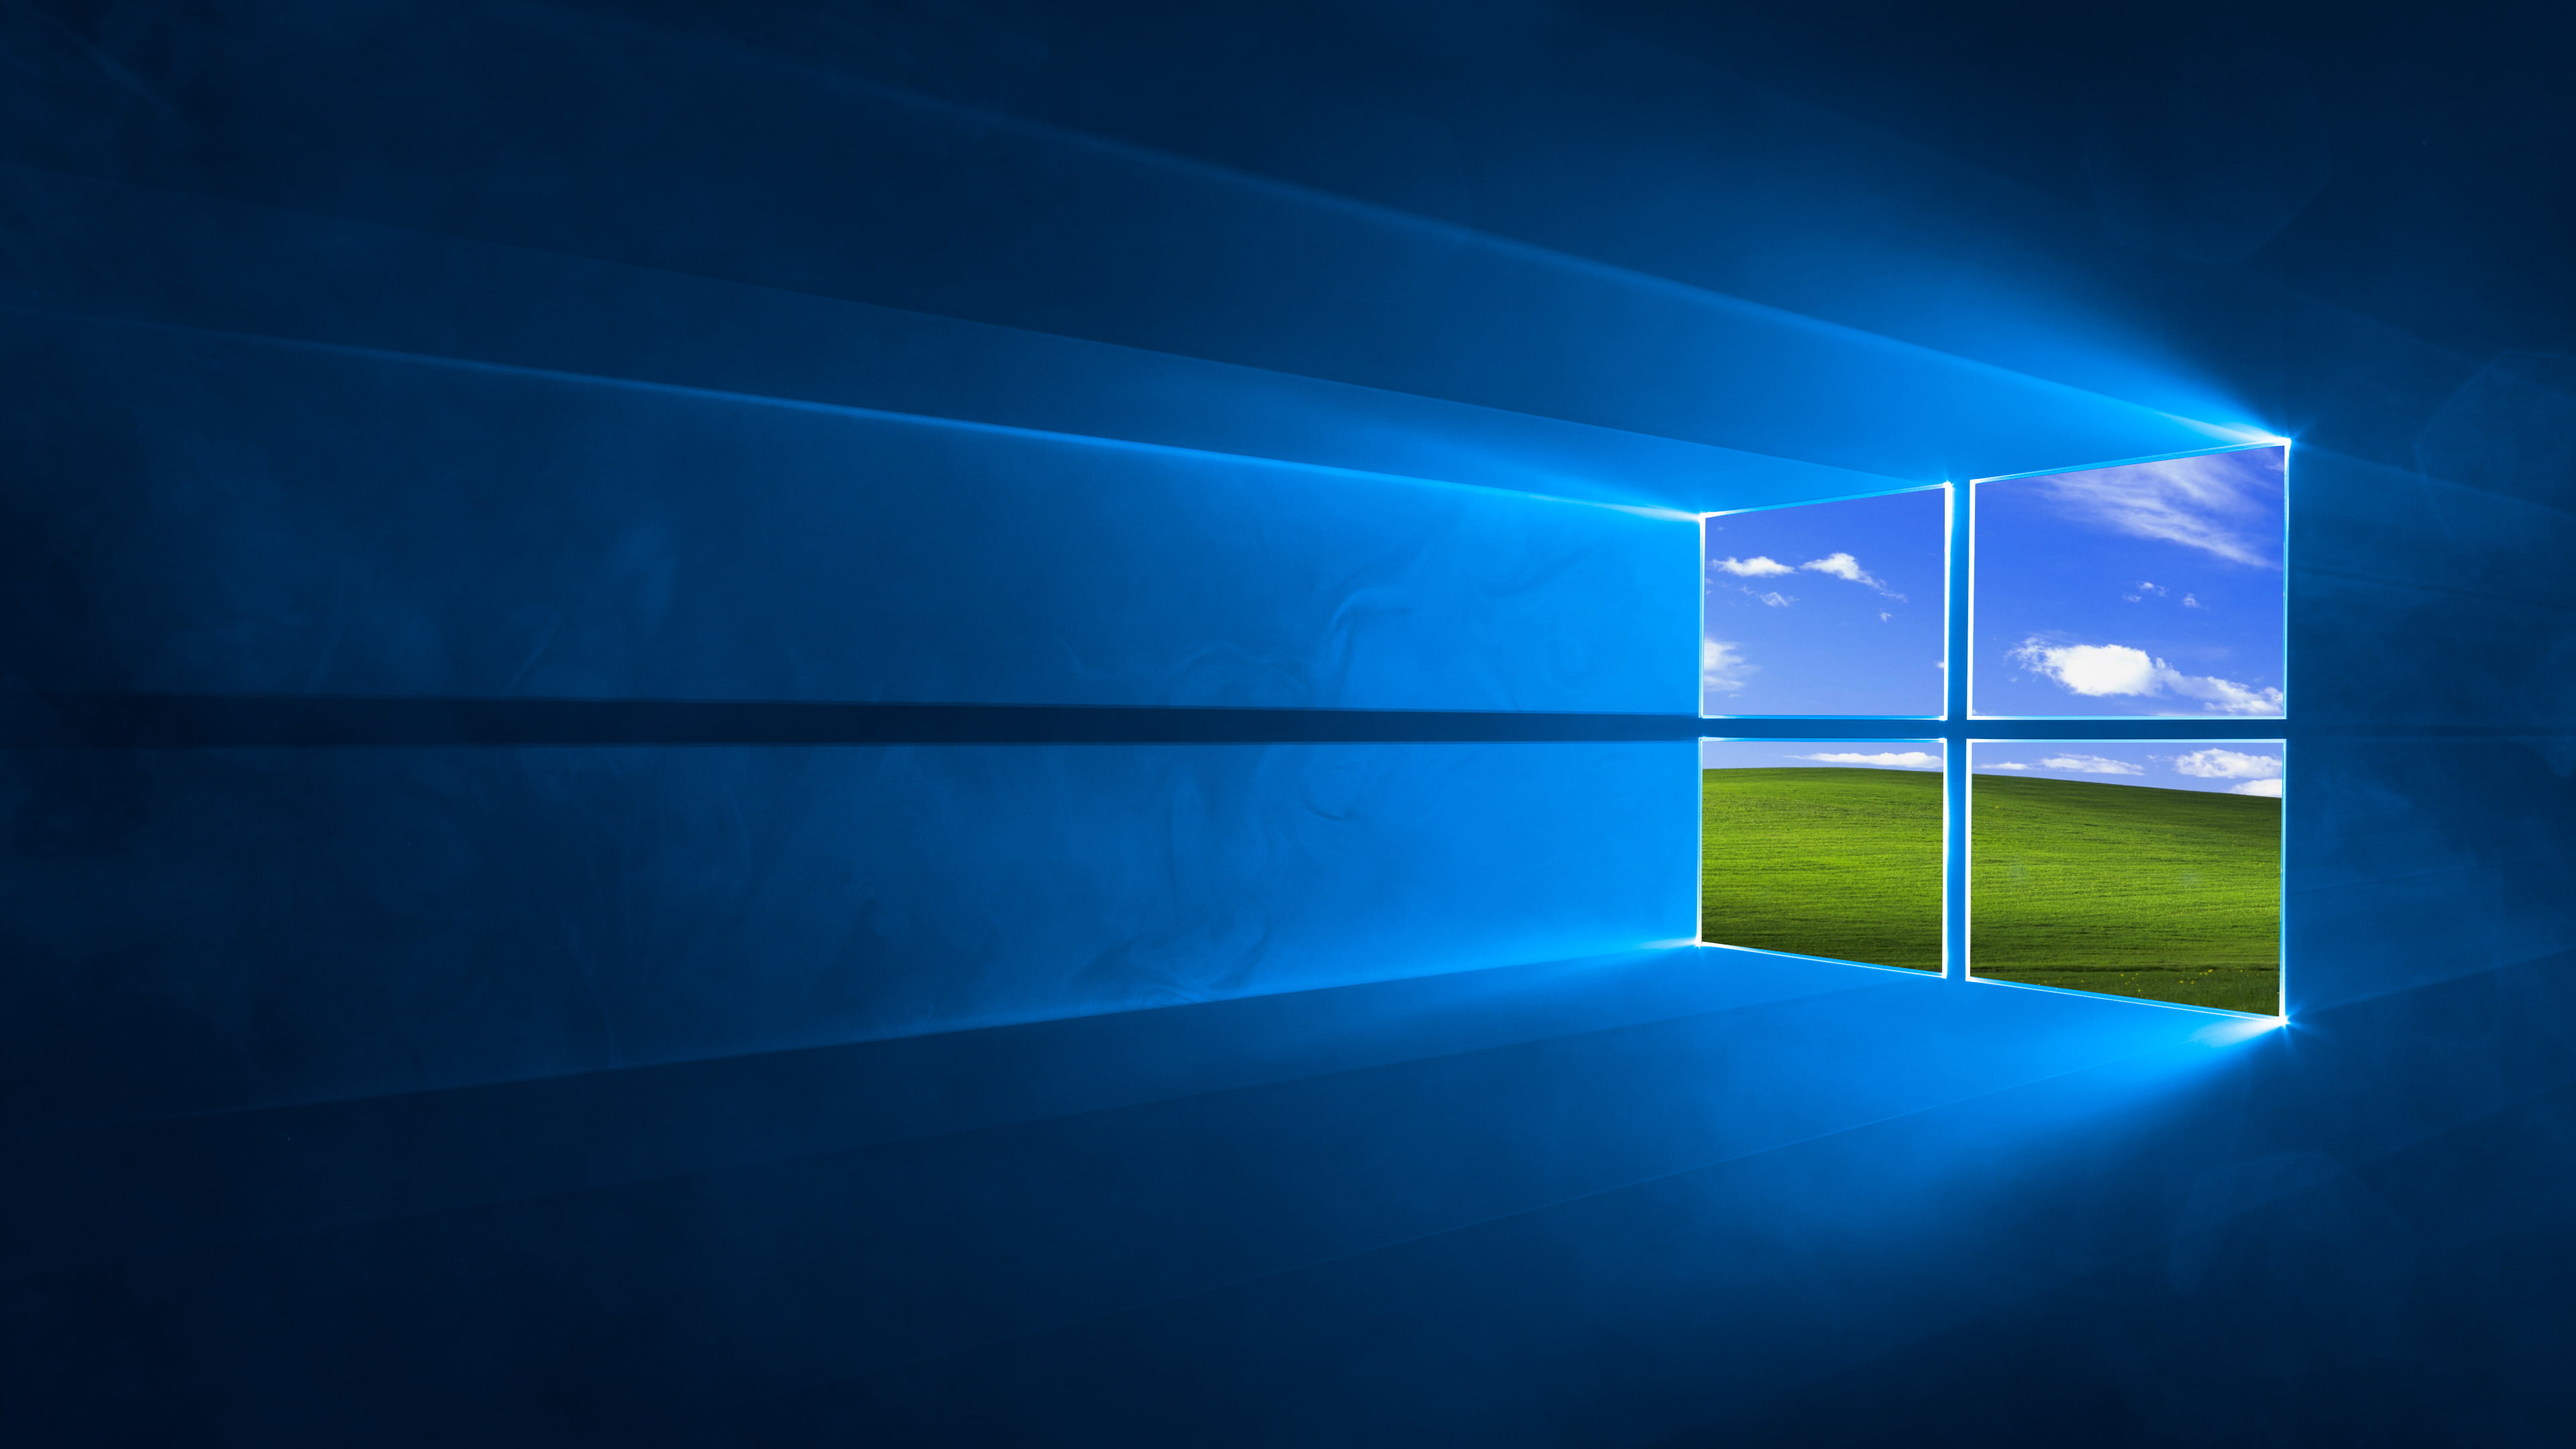 Windows 10, Windows XP